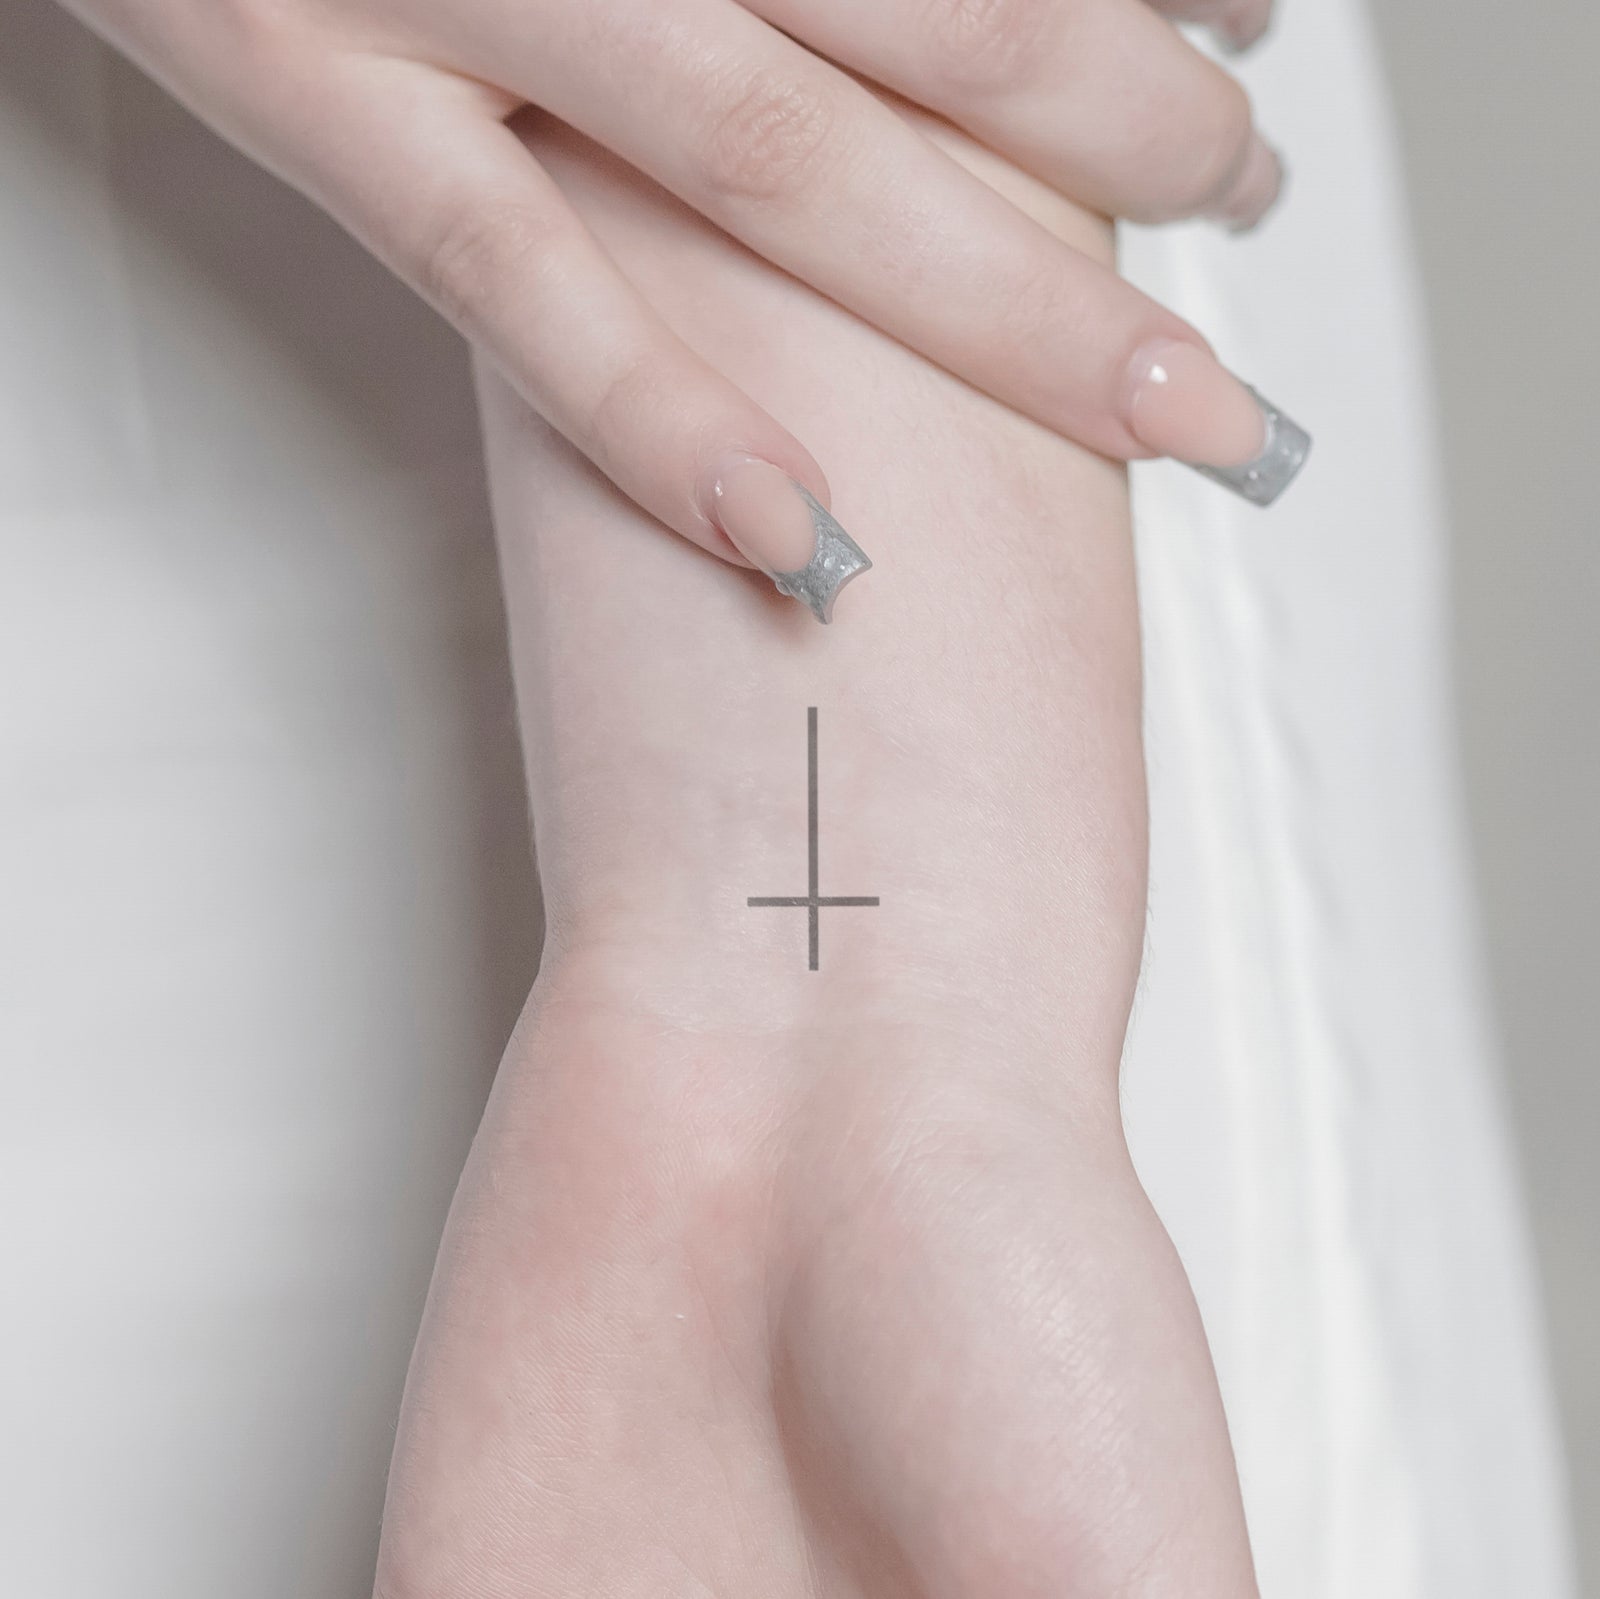 Jana Luna Tattoo - #Cross #Religion #sweet #cute #sexy #beautiful #nice  #dotwork #instagood #instadaily #girl #fashion #holy #beach #trend #tattoo # tattoos #tattooartist #art #ink #inked #inke #tattooed #inkedup #tattooart  #hot #happy #life #